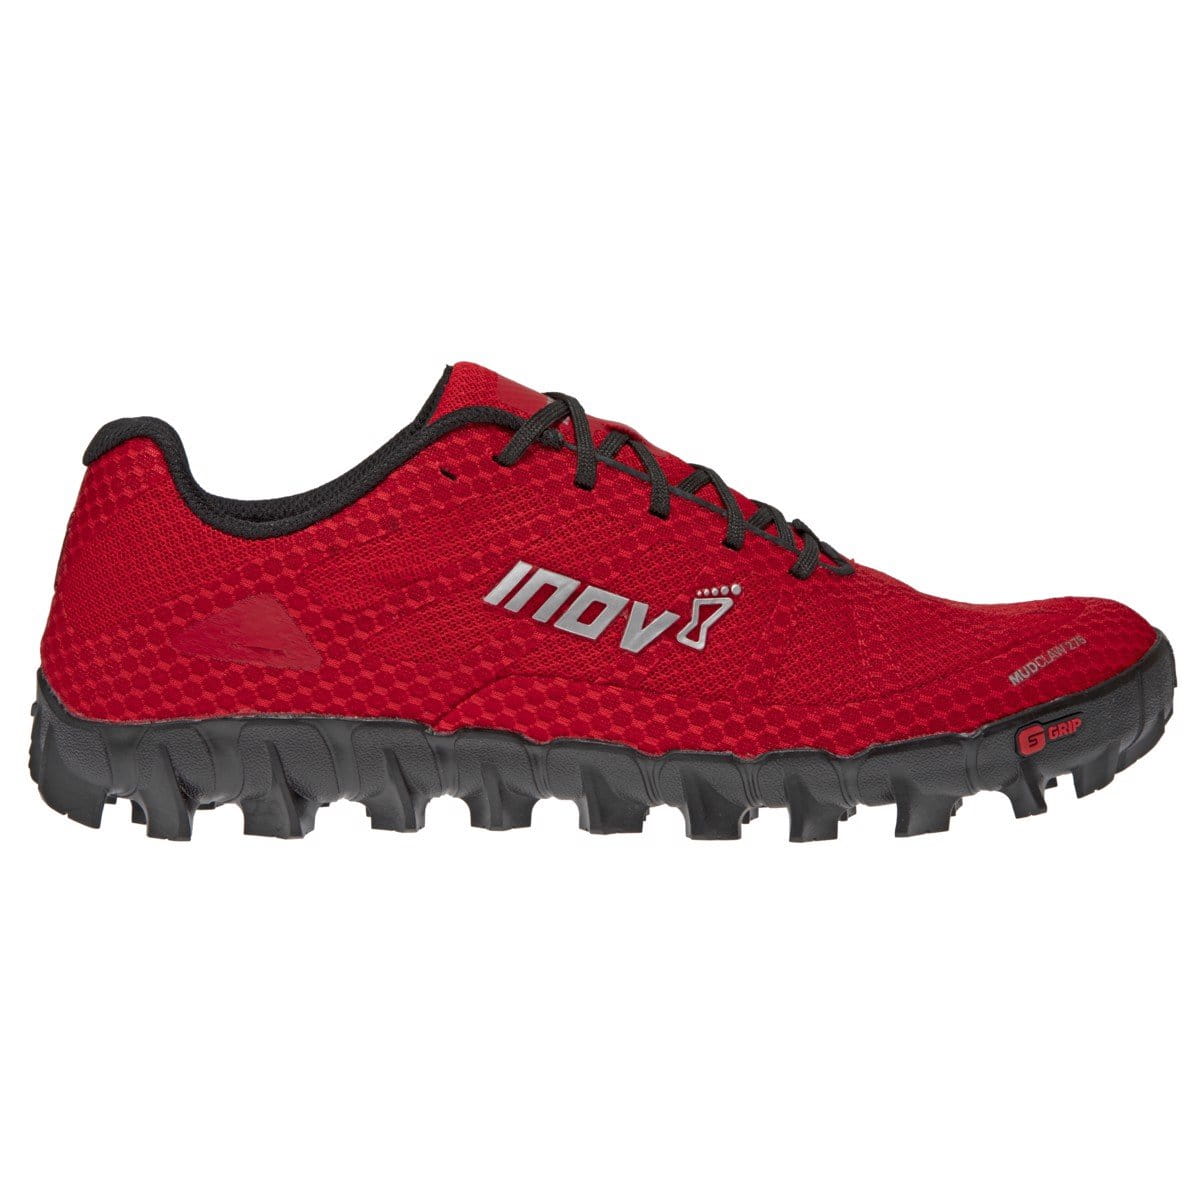 Běžecká obuv Inov-8  MUDCLAW 275 M (P) red/black červená/černá